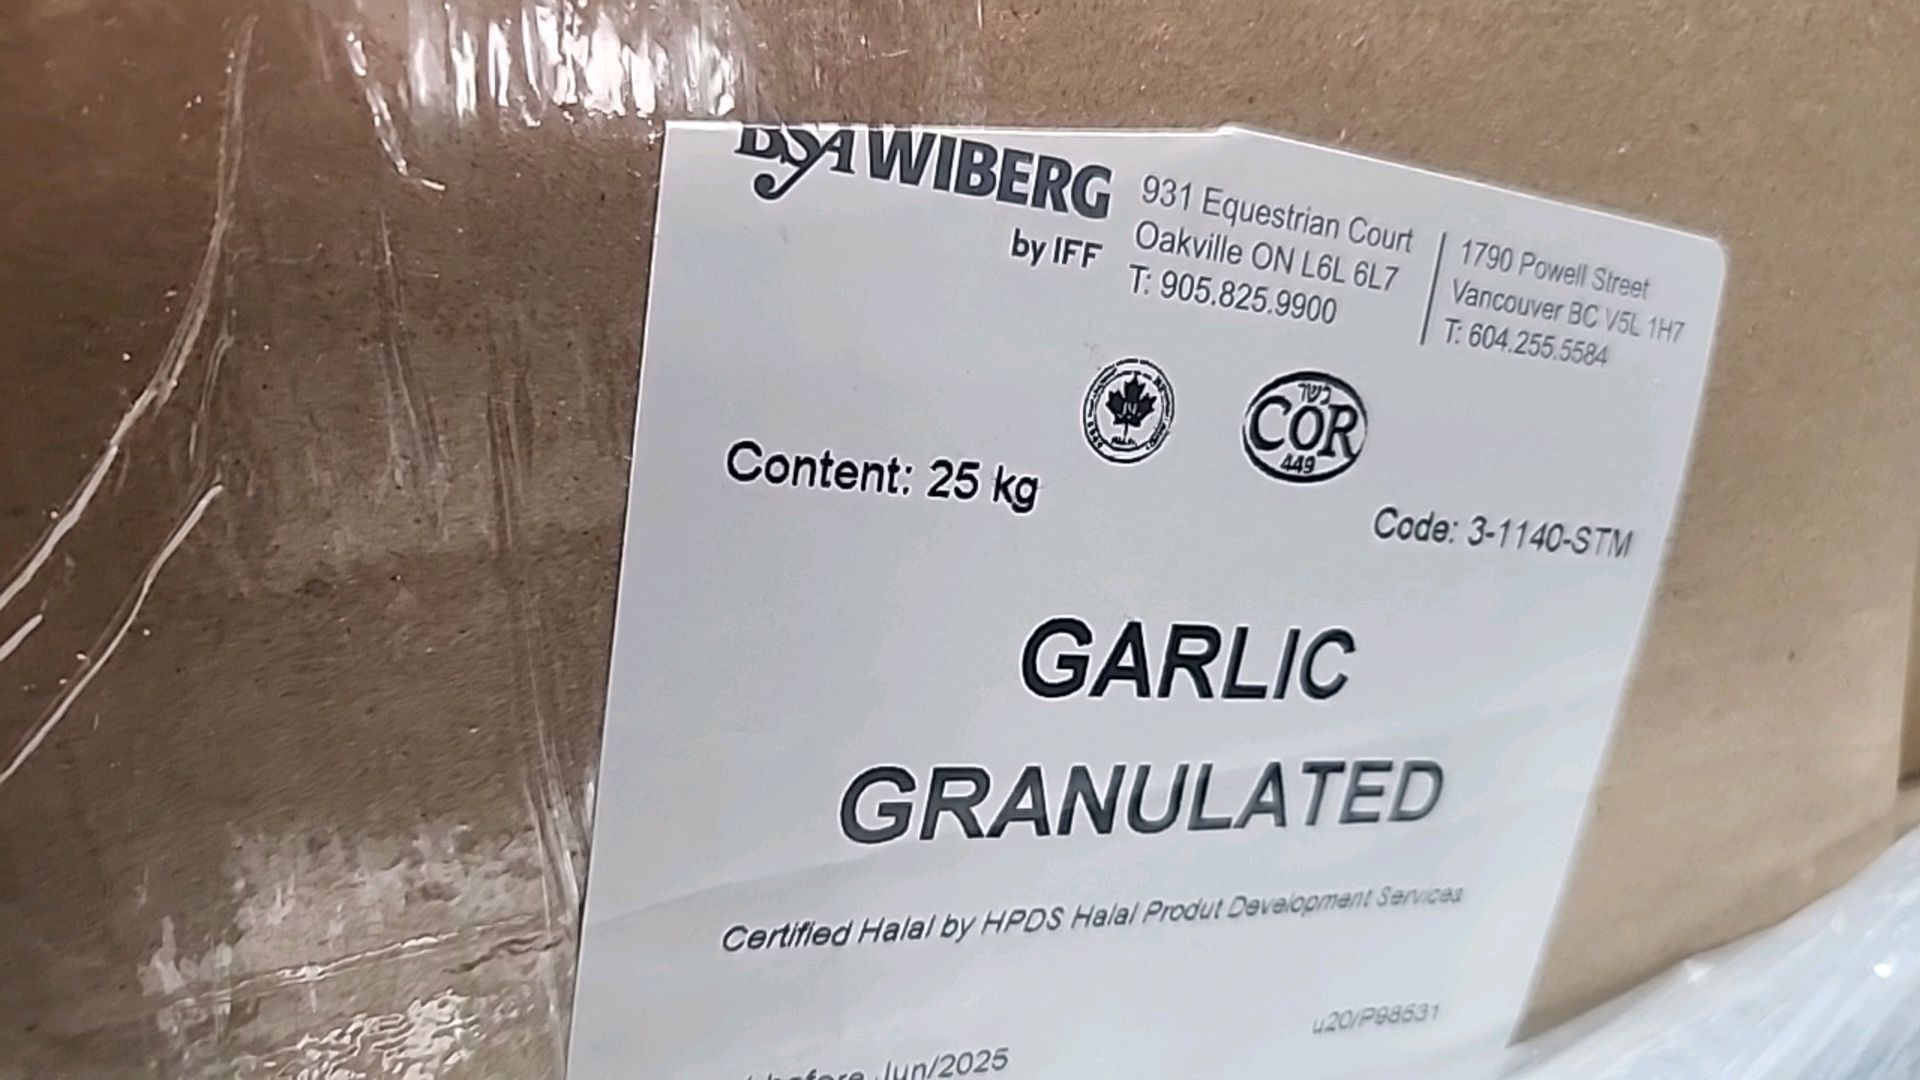 (3 boxes/25 kg ea. = 75 kg) BSA Wiberg granulated garlic 3-1140-STM [Loc.Warehouse] - Image 2 of 4